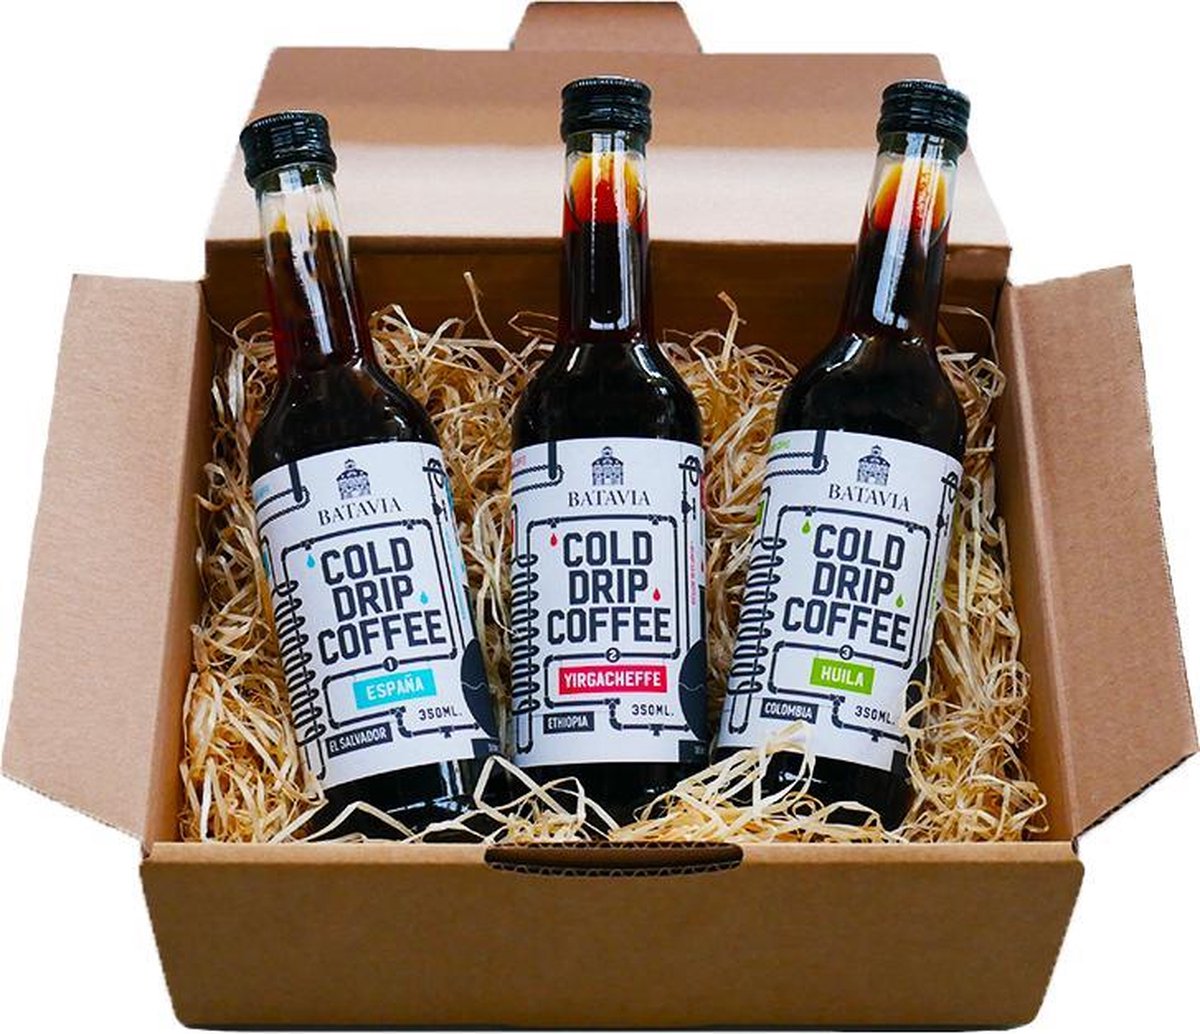 Batavia Cold Drip Coffee geschenkverpakking - 3 x 350ml - single origin cold drip coffees in geschenkverpakking - het meer smaakvolle alternatief voor cold brew koffie